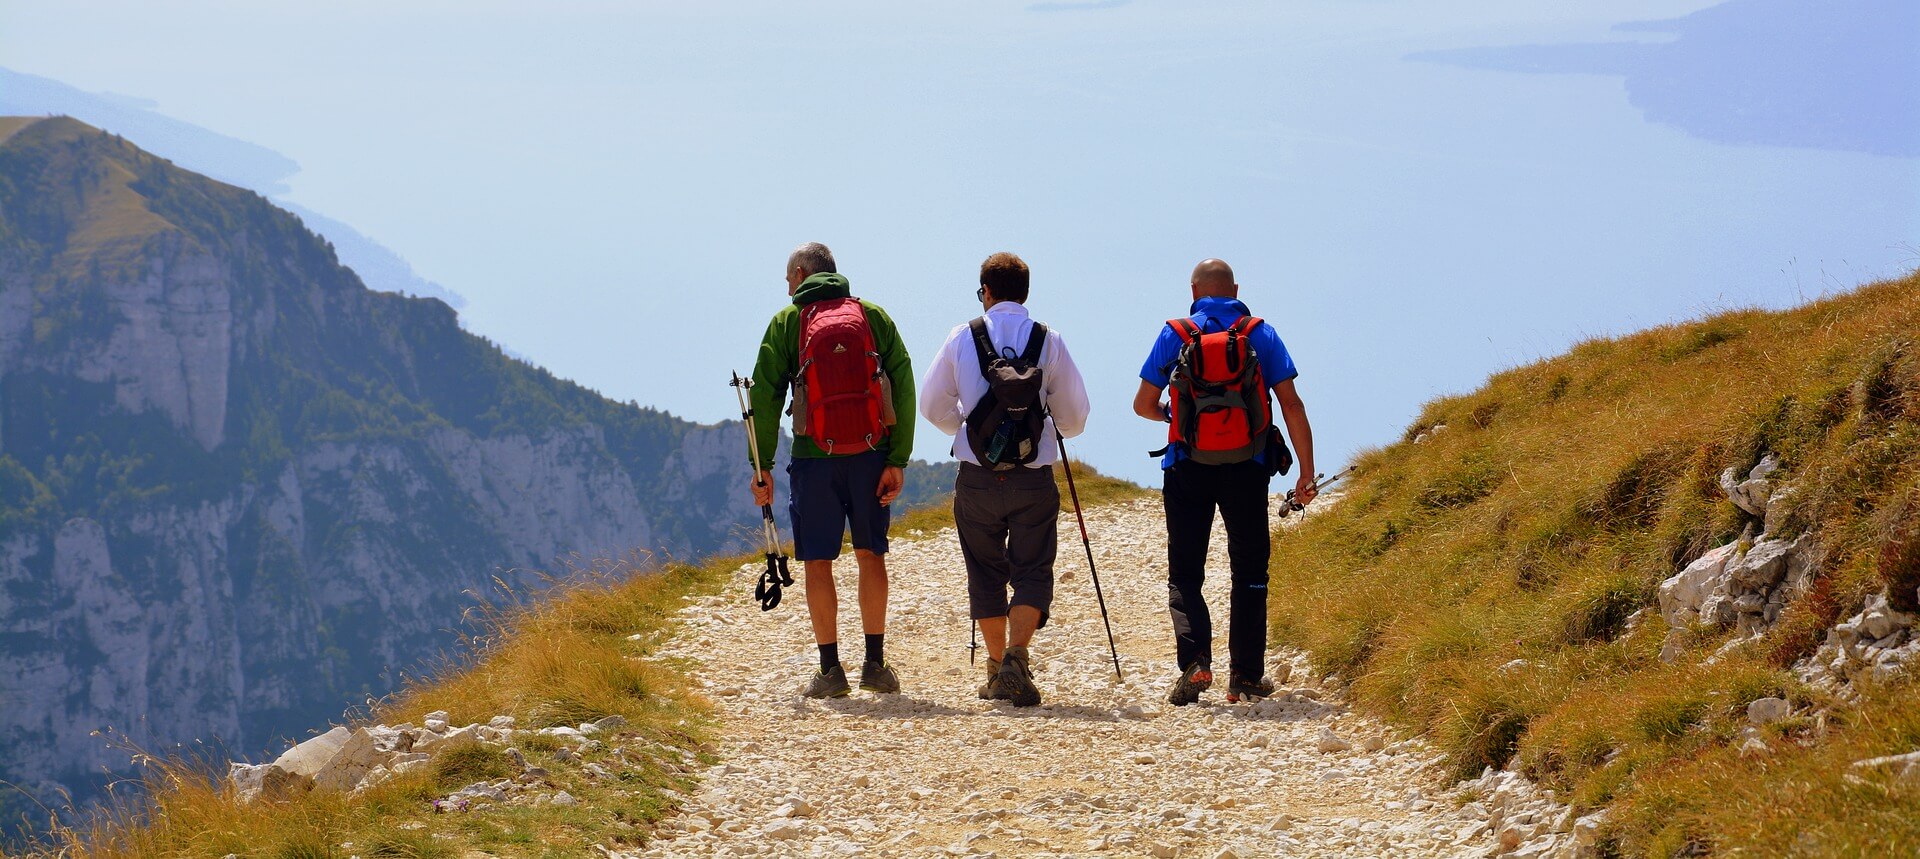 Escursione trekking in Valtellina al passo Caronella